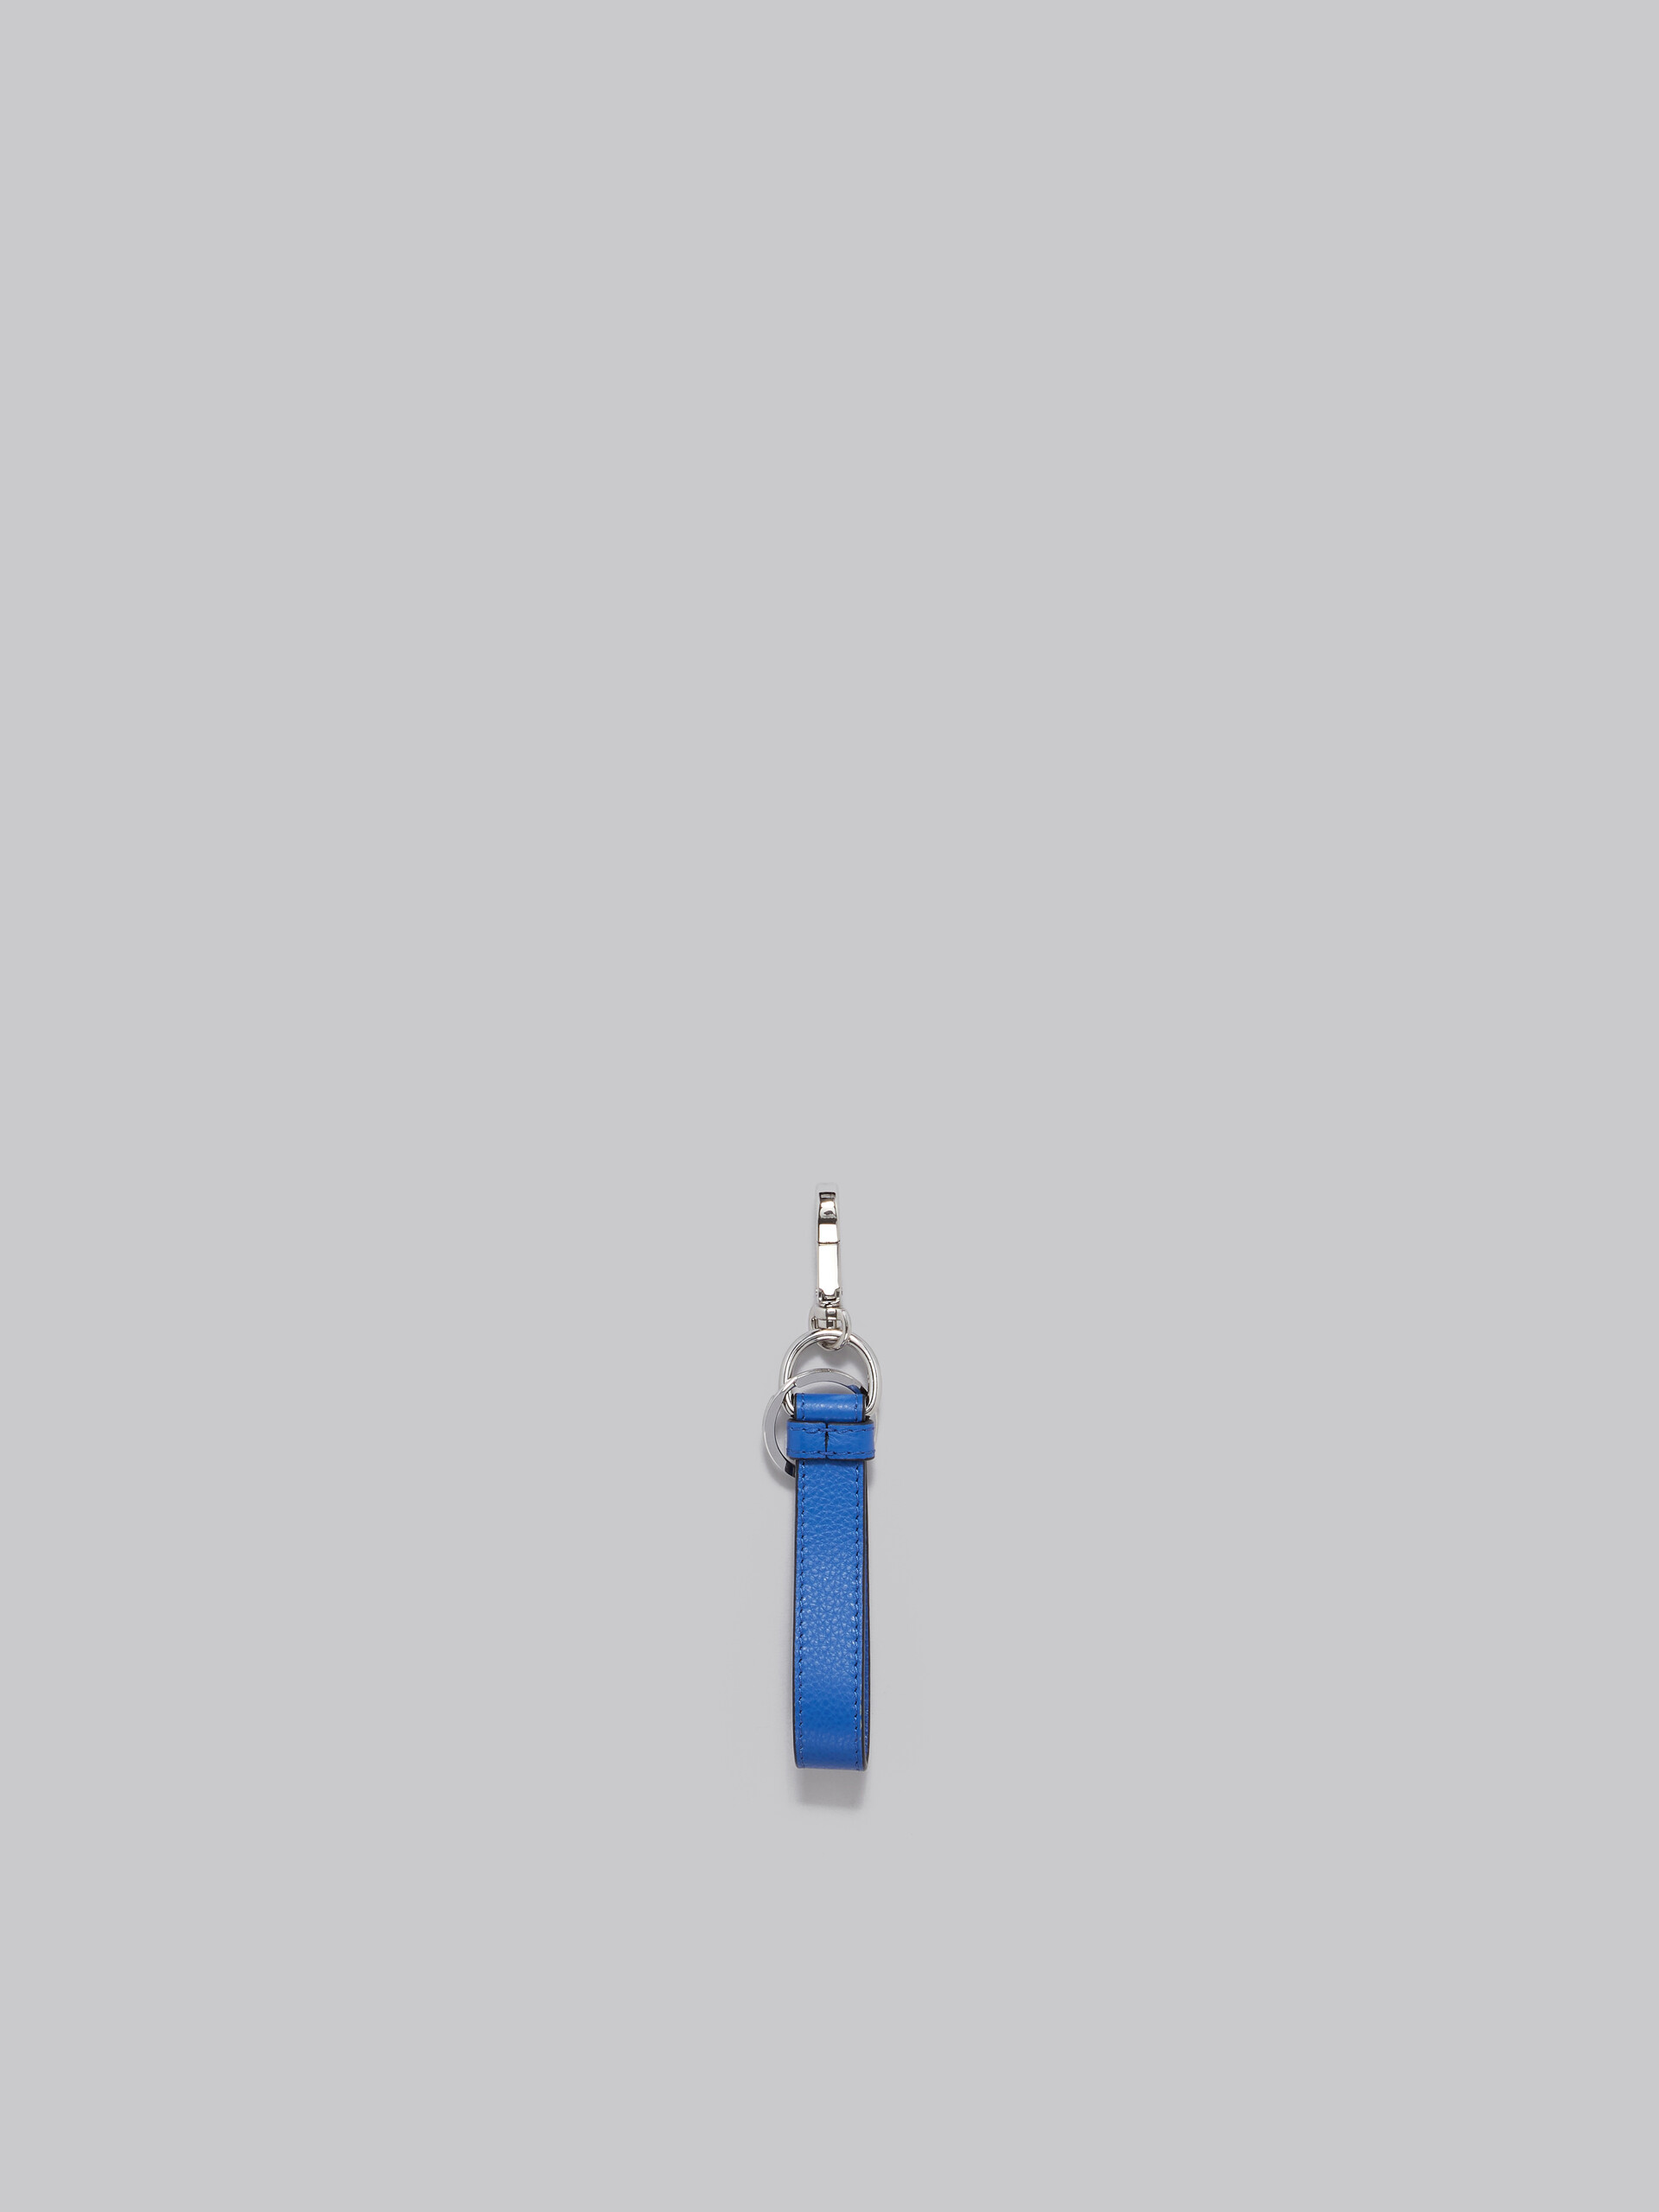 Schlüsselanhänger aus Leder mit Marni-Flicken in Blau - Schlüsseletui - Image 3